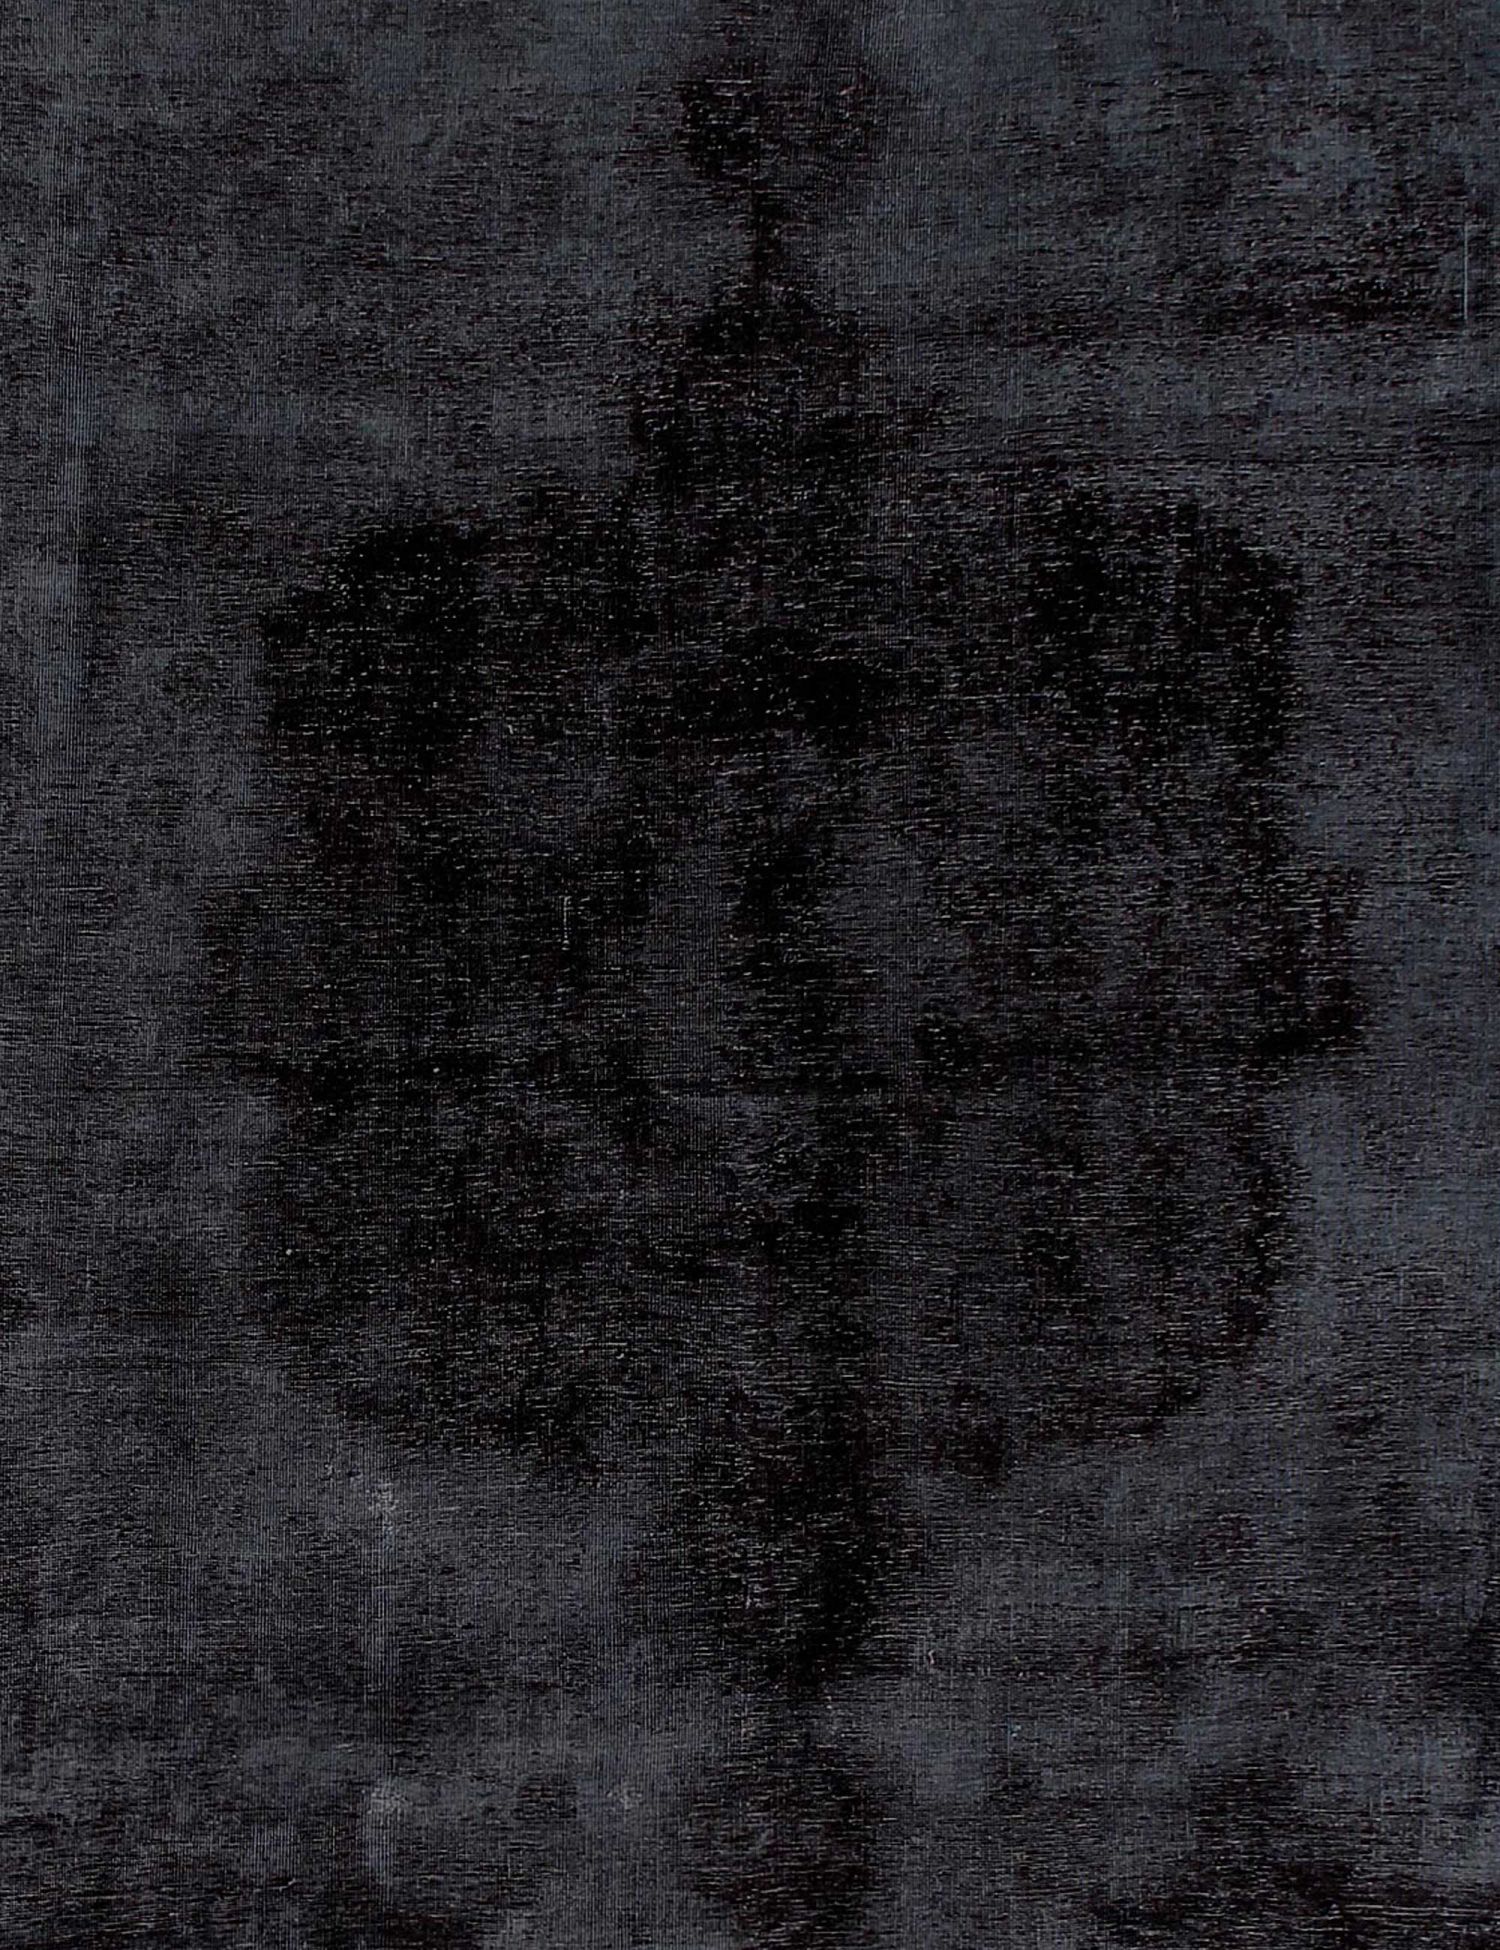 Persischer Vintage Teppich  schwarz <br/>280 x 280 cm